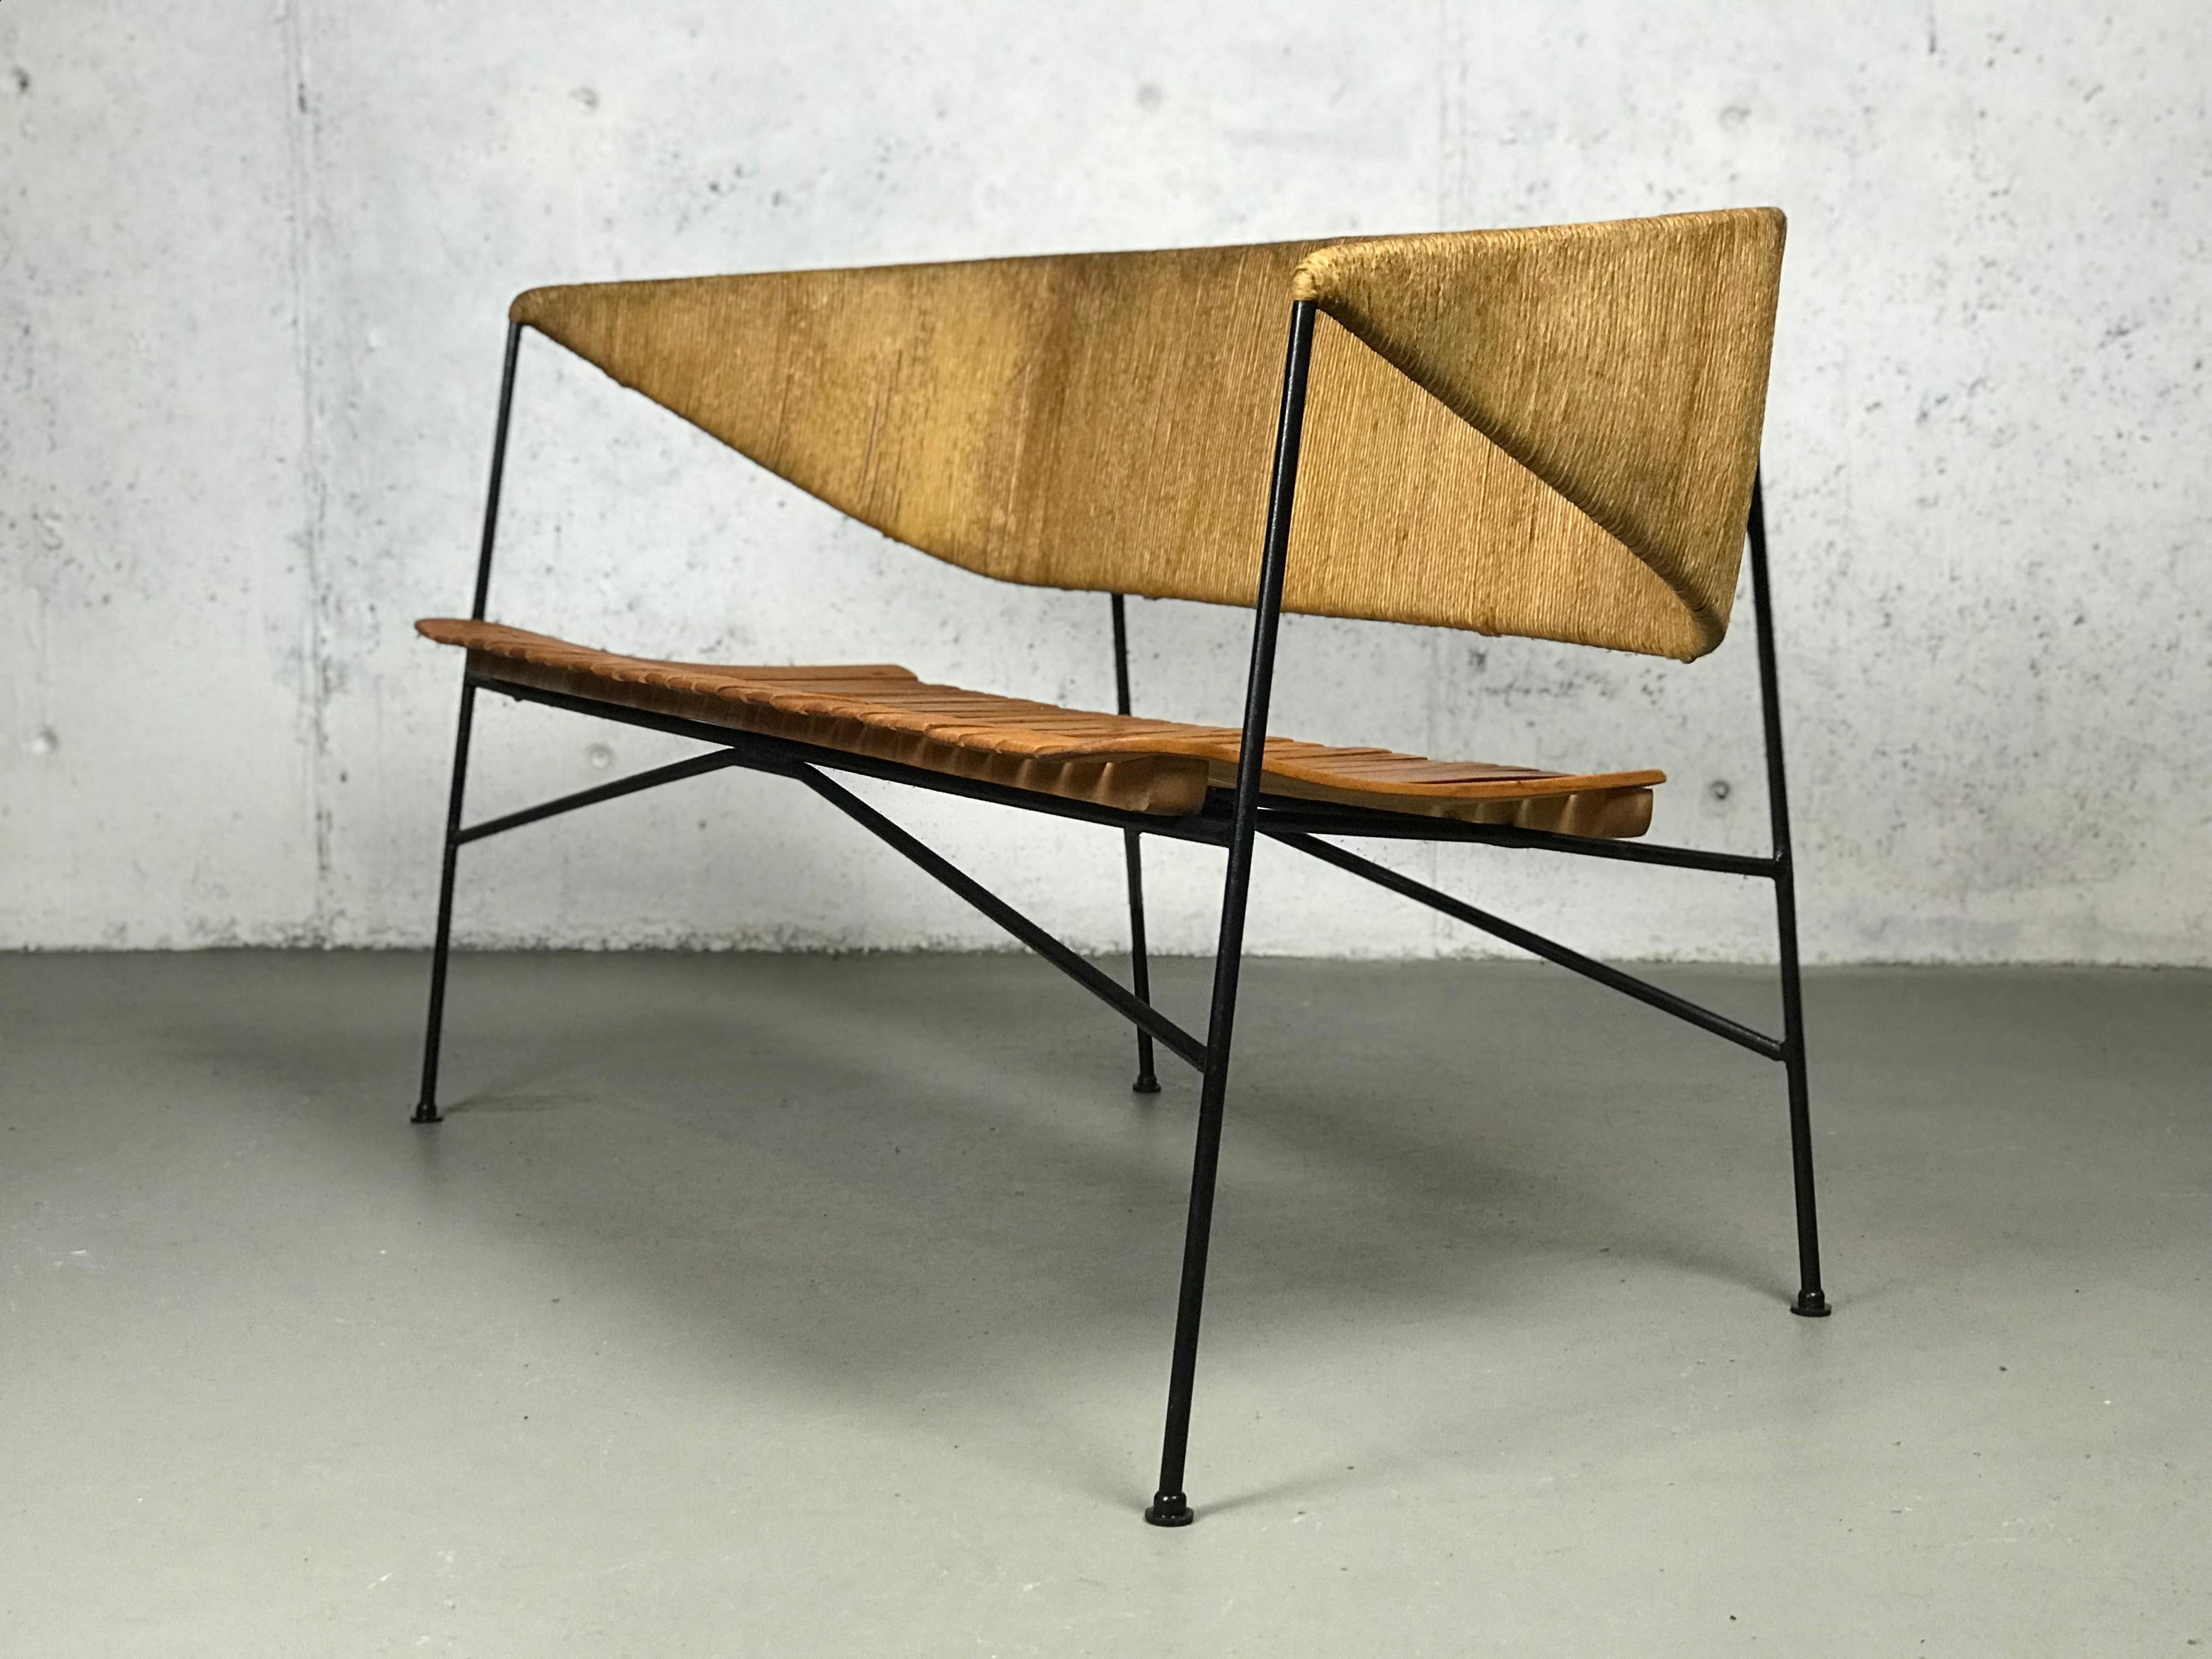 Mid-20th Century Modernist Settee by Arthur Umanoff for Shaver Howard & Raymor Loveseat Bench